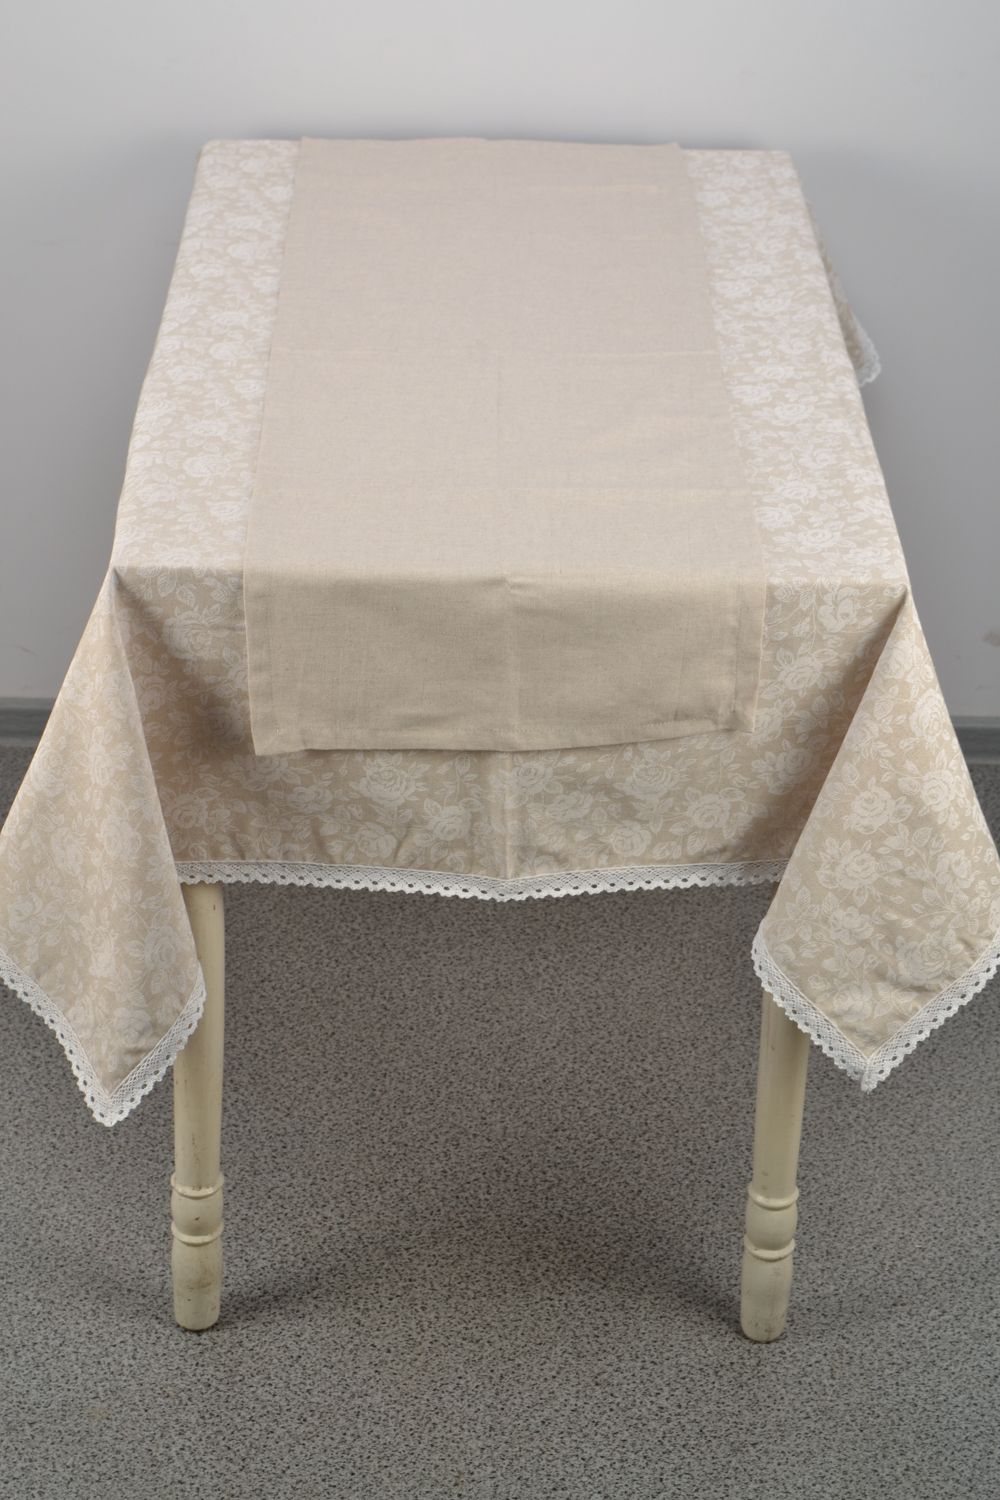 Нарядная скатерть на прямоугольный стол с кружевом Белая роза фото 4